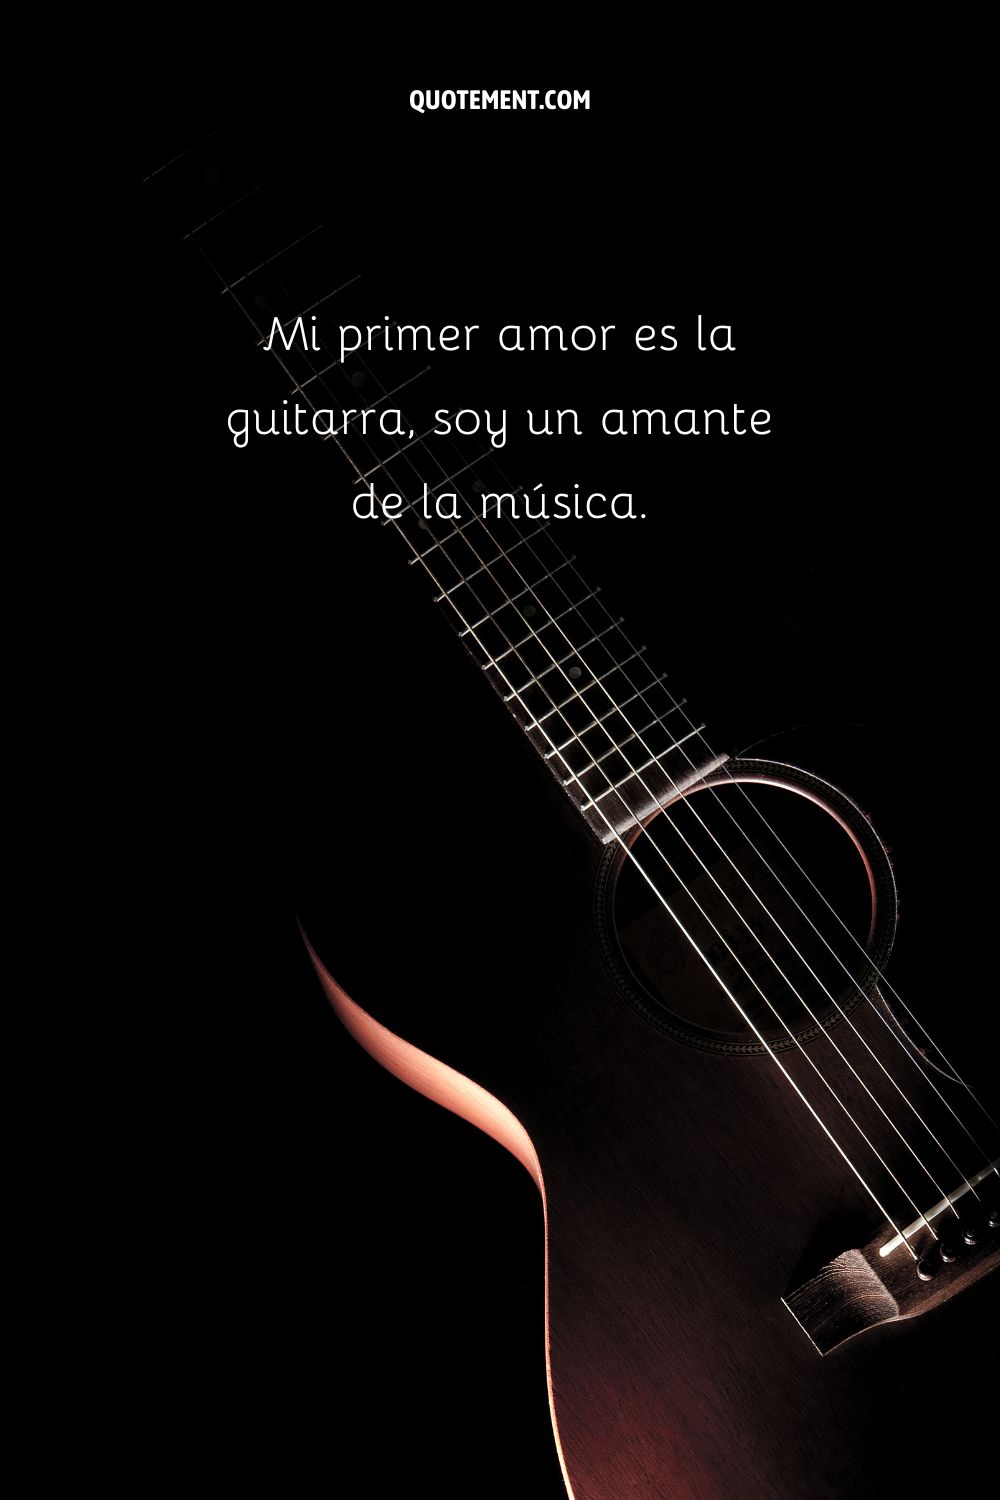 Mi primer amor es la guitarra, soy un amante de la música.